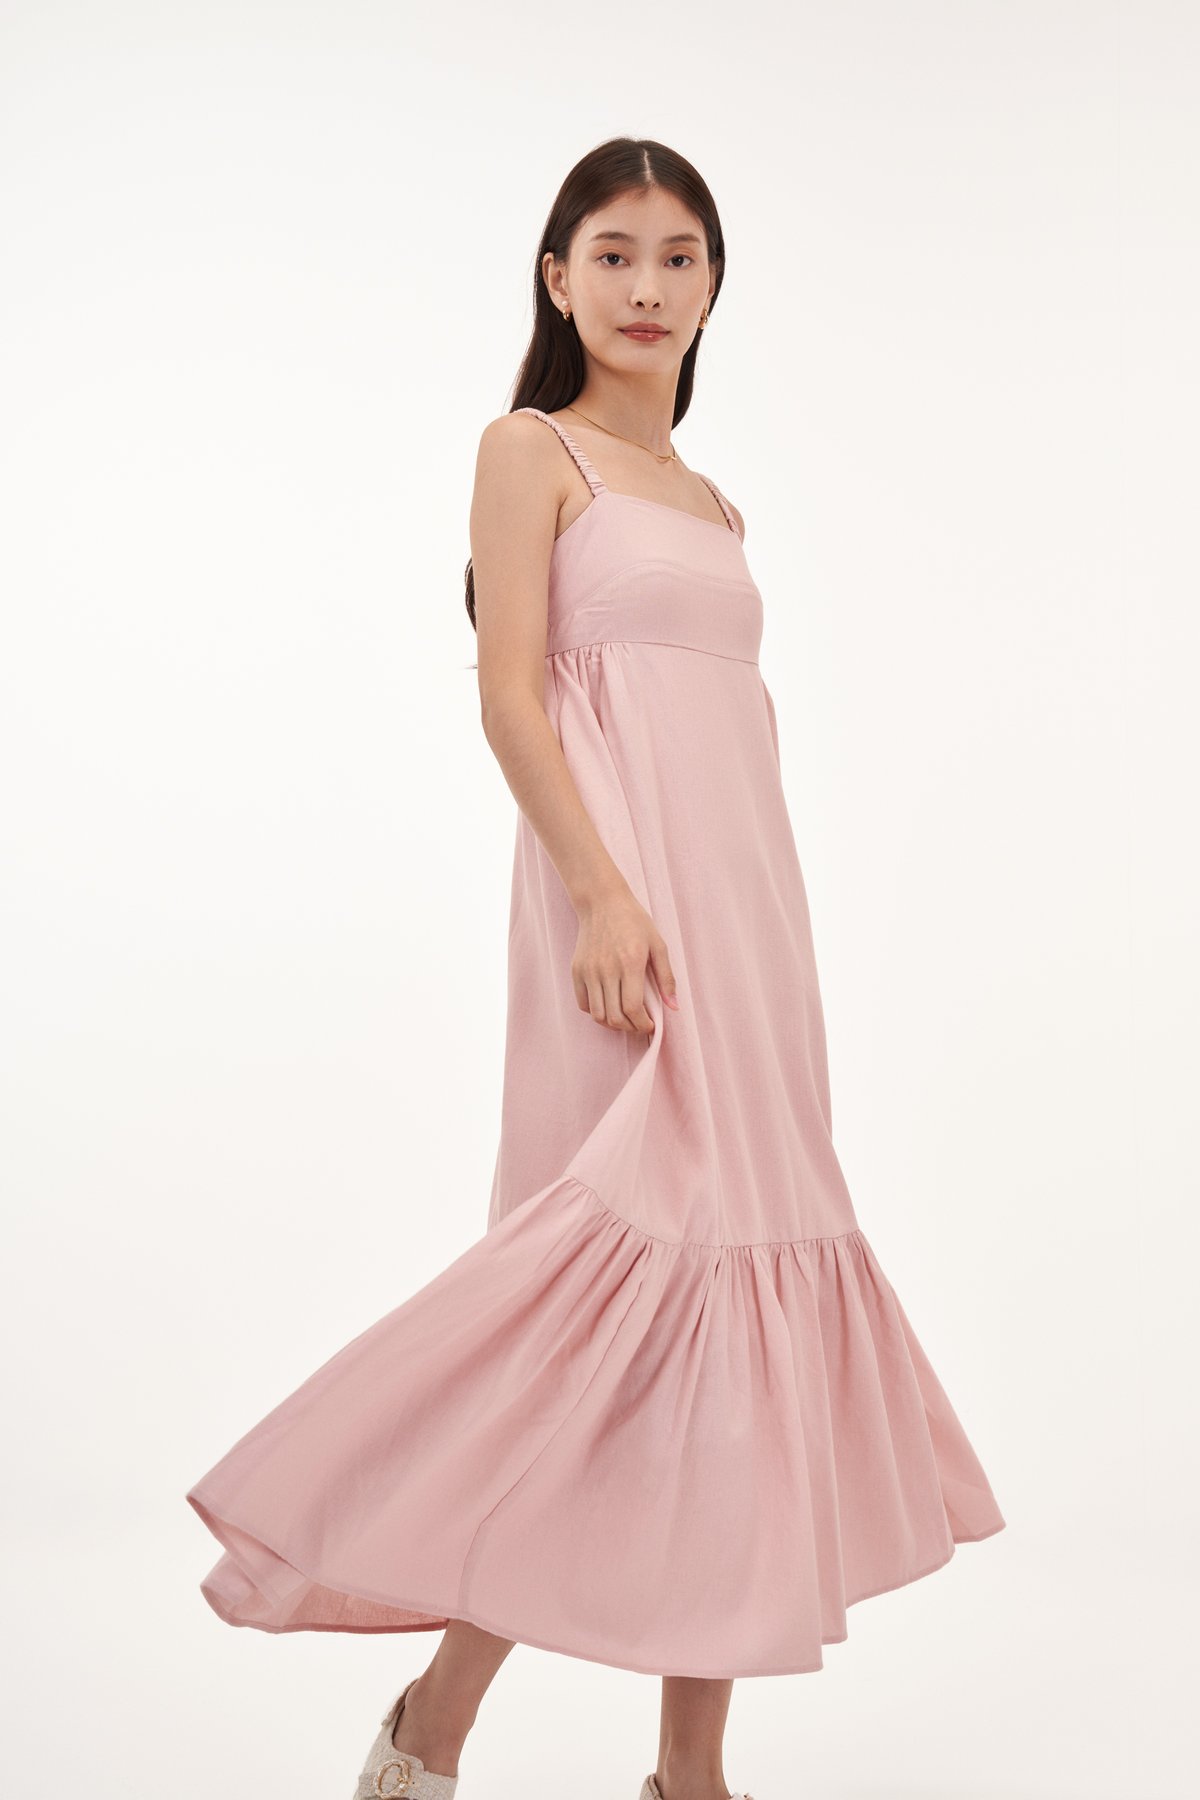 Serah Scruchie Strap Midaxi Dress in Pink